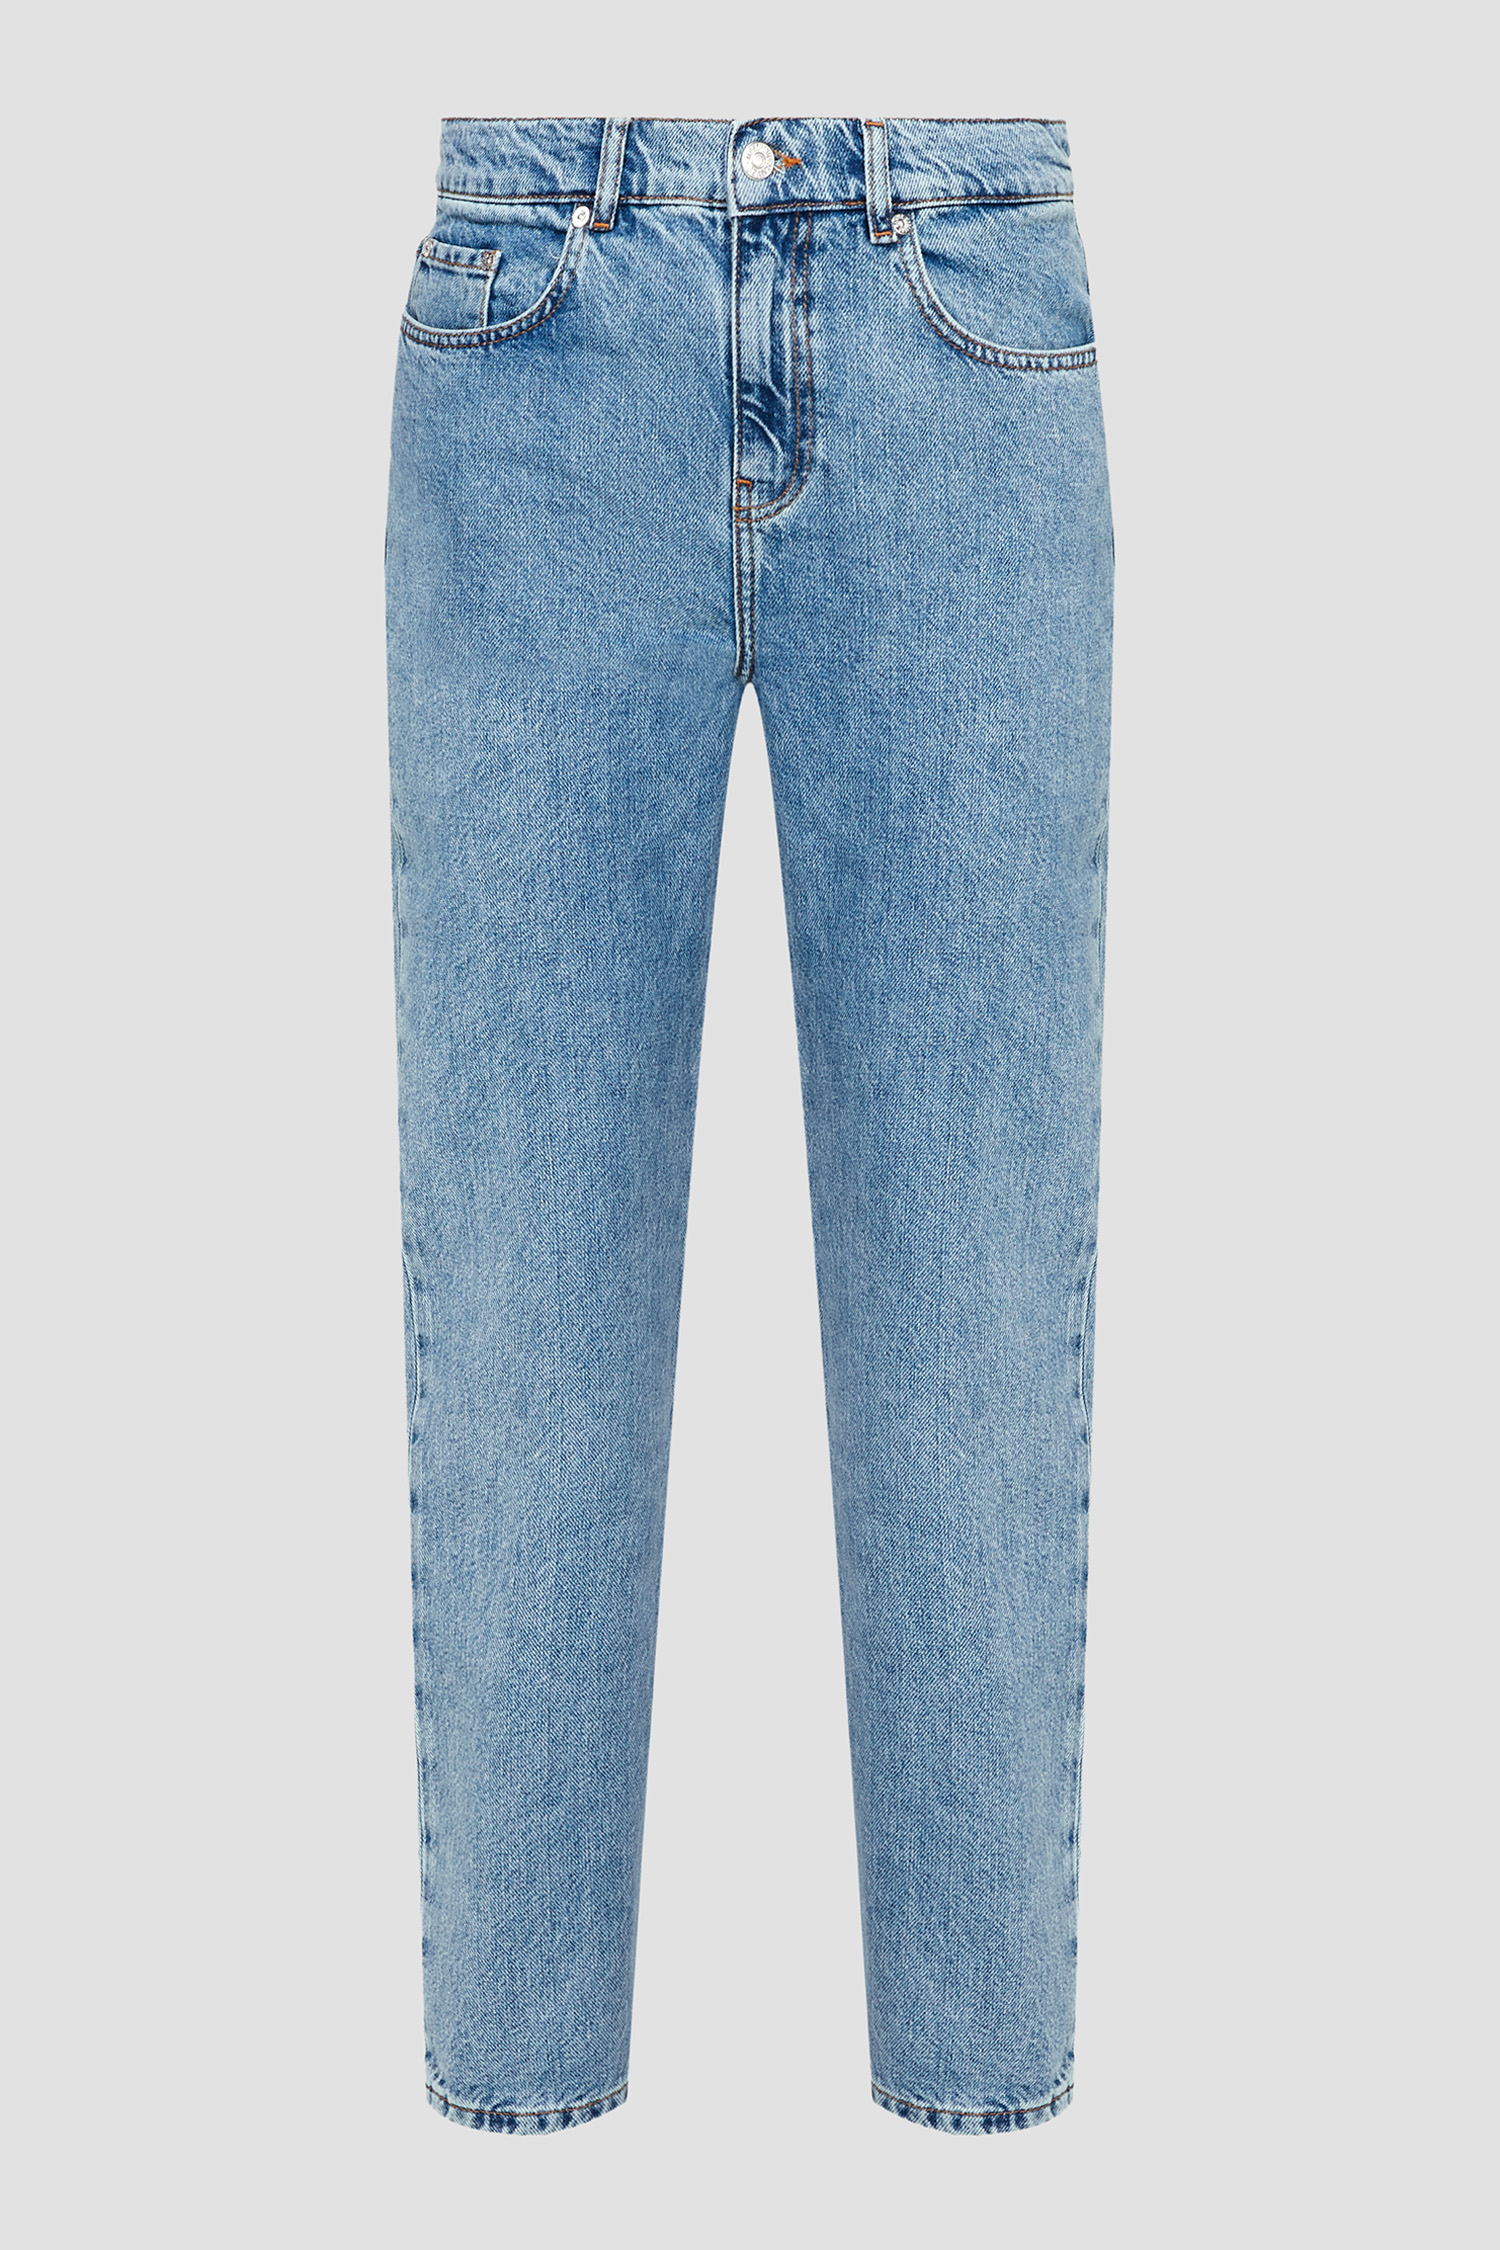 Жіночі блакитні джинси Moschino J0325.8736;1295